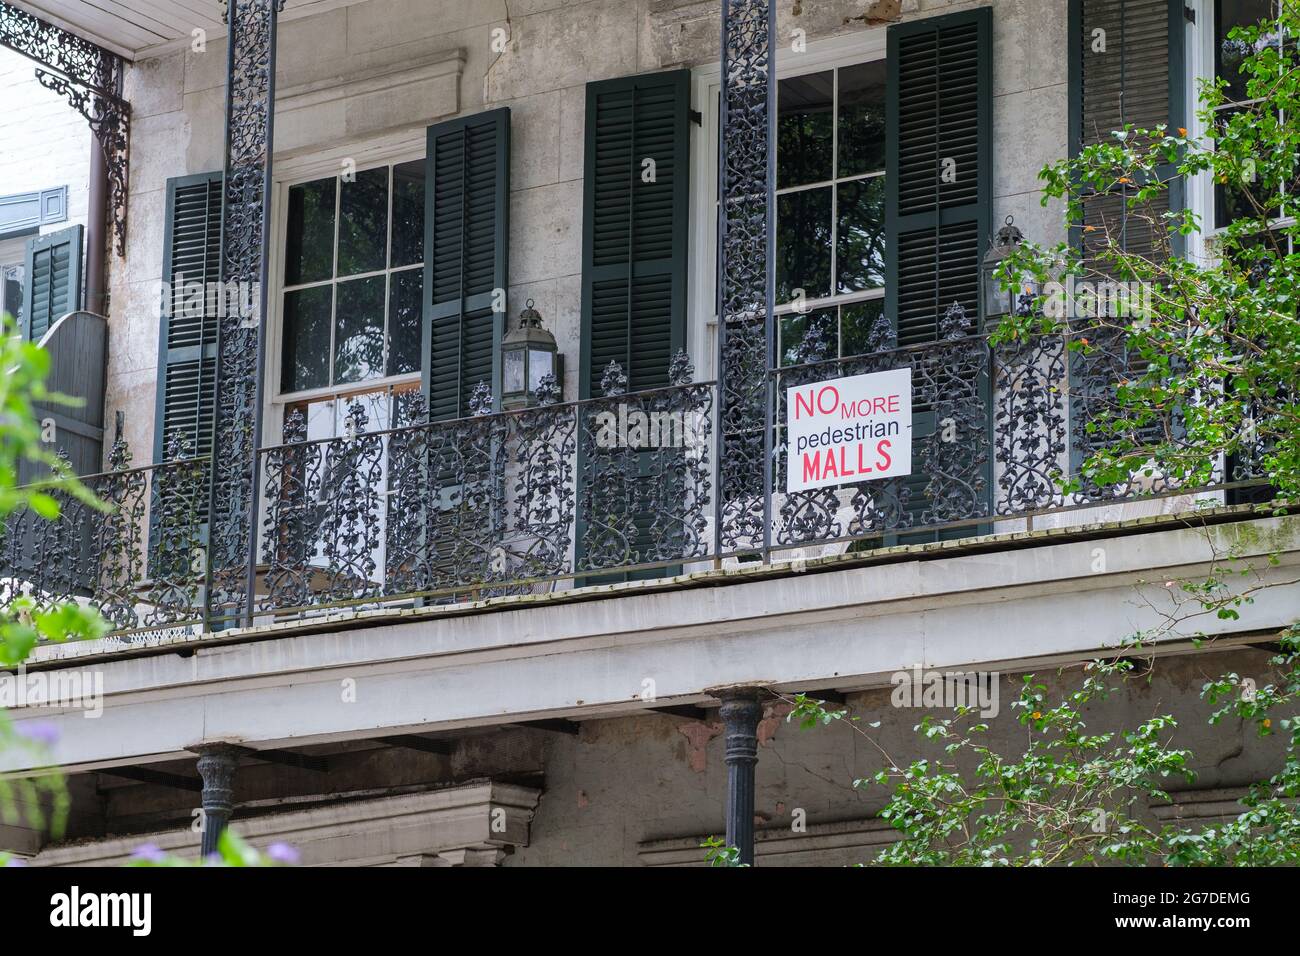 NEW ORLEANS, LA, USA - 10. JULI 2021: Schild „No More Pedestrian Malls“ auf der Galerie des historischen Gebäudes im French Quarter Stockfoto